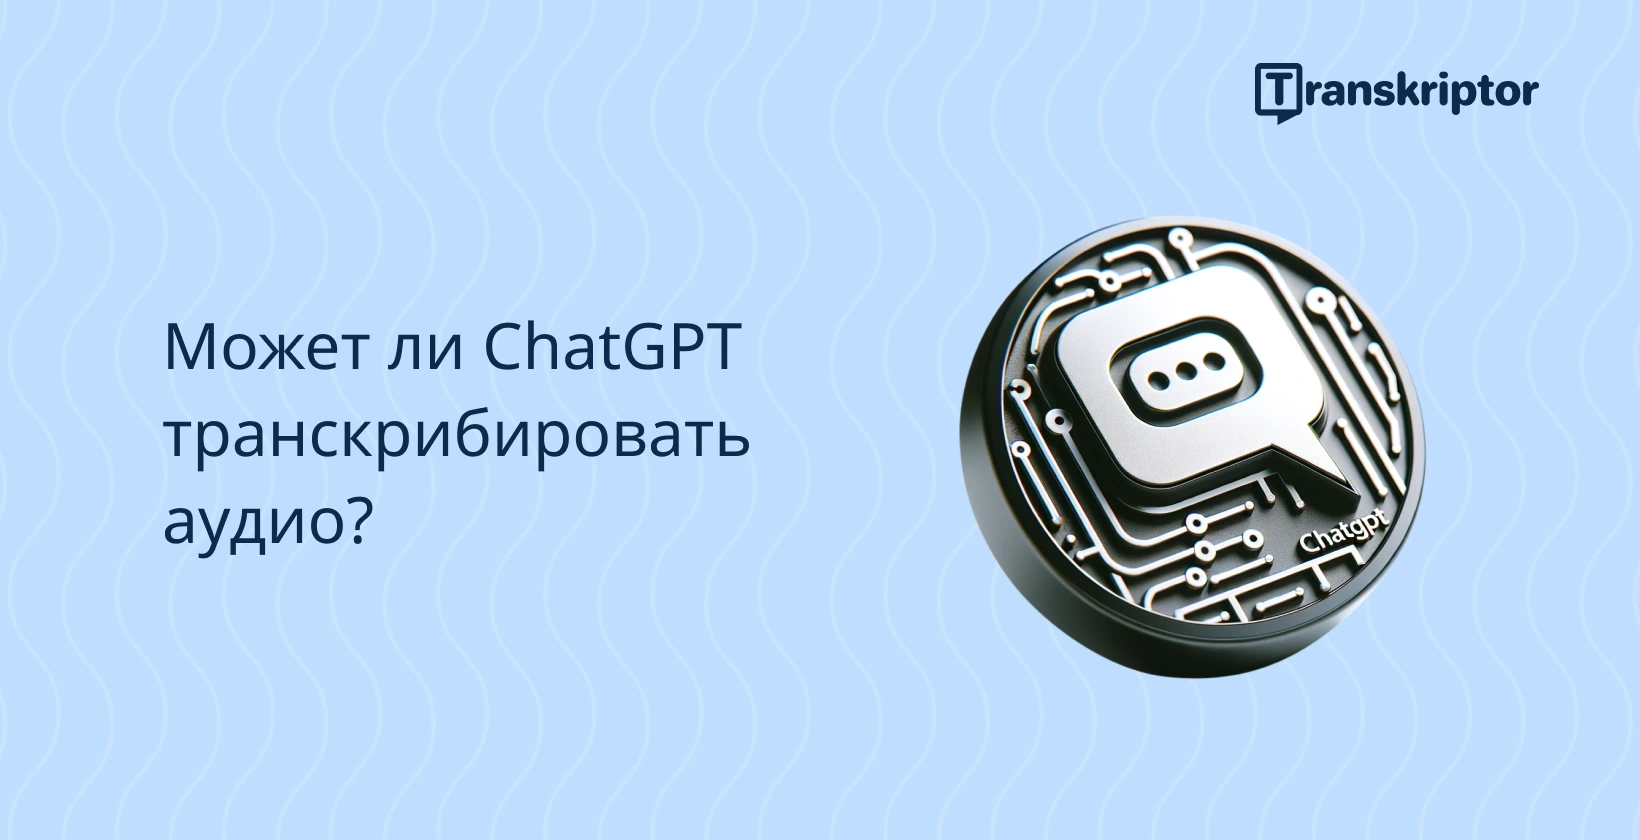 Значок транскрипции аудио ChatGPT на волнистом синем фоне, ставящий под сомнение возможность транскрипции ChatGPT.